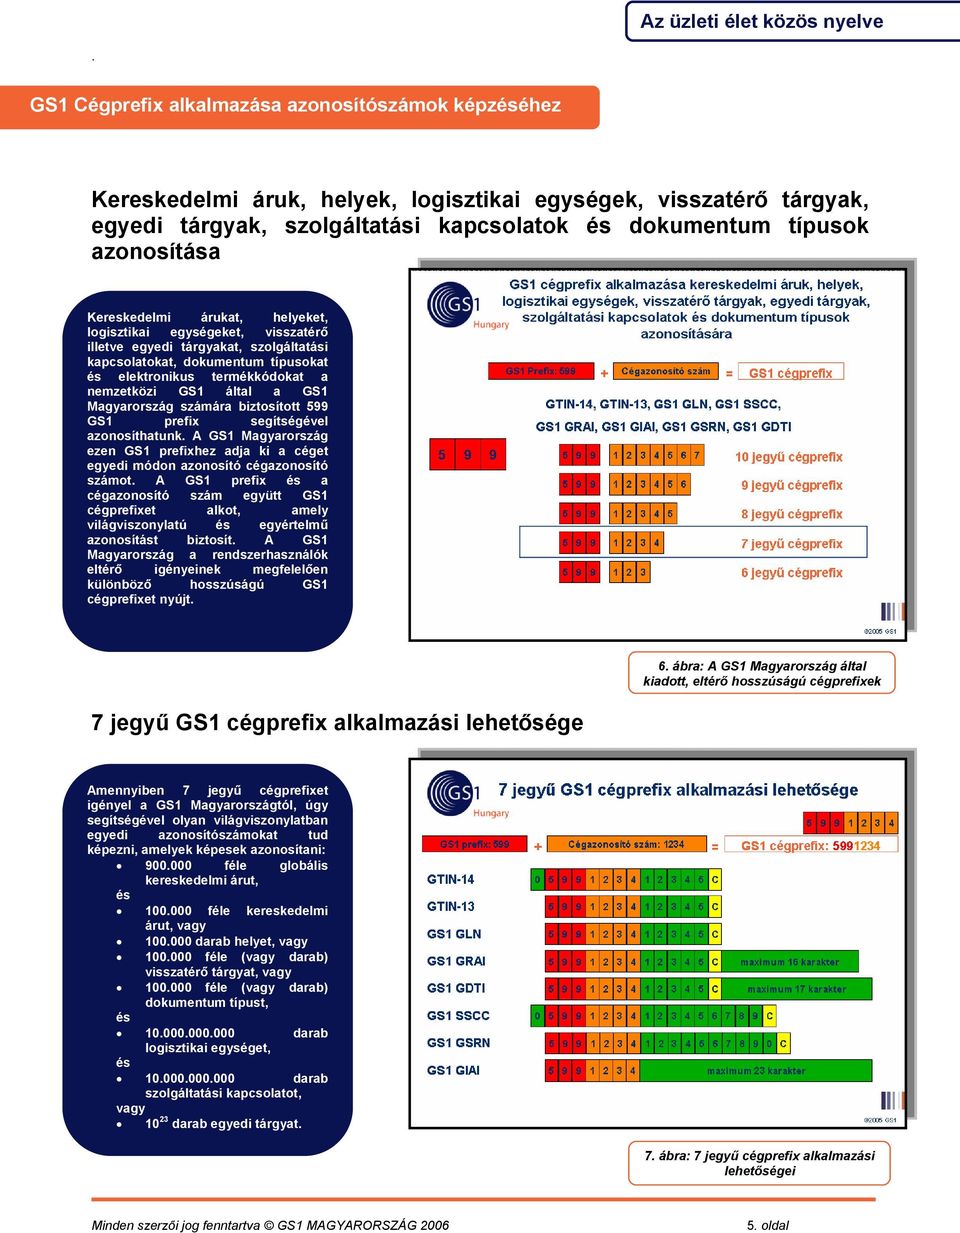 Magyarország számára biztosított 599 GS1 prefix segítségével azonosíthatunk A GS1 Magyarország ezen GS1 prefixhez adja ki a céget egyedi módon azonosító cégazonosító számot A GS1 prefix a